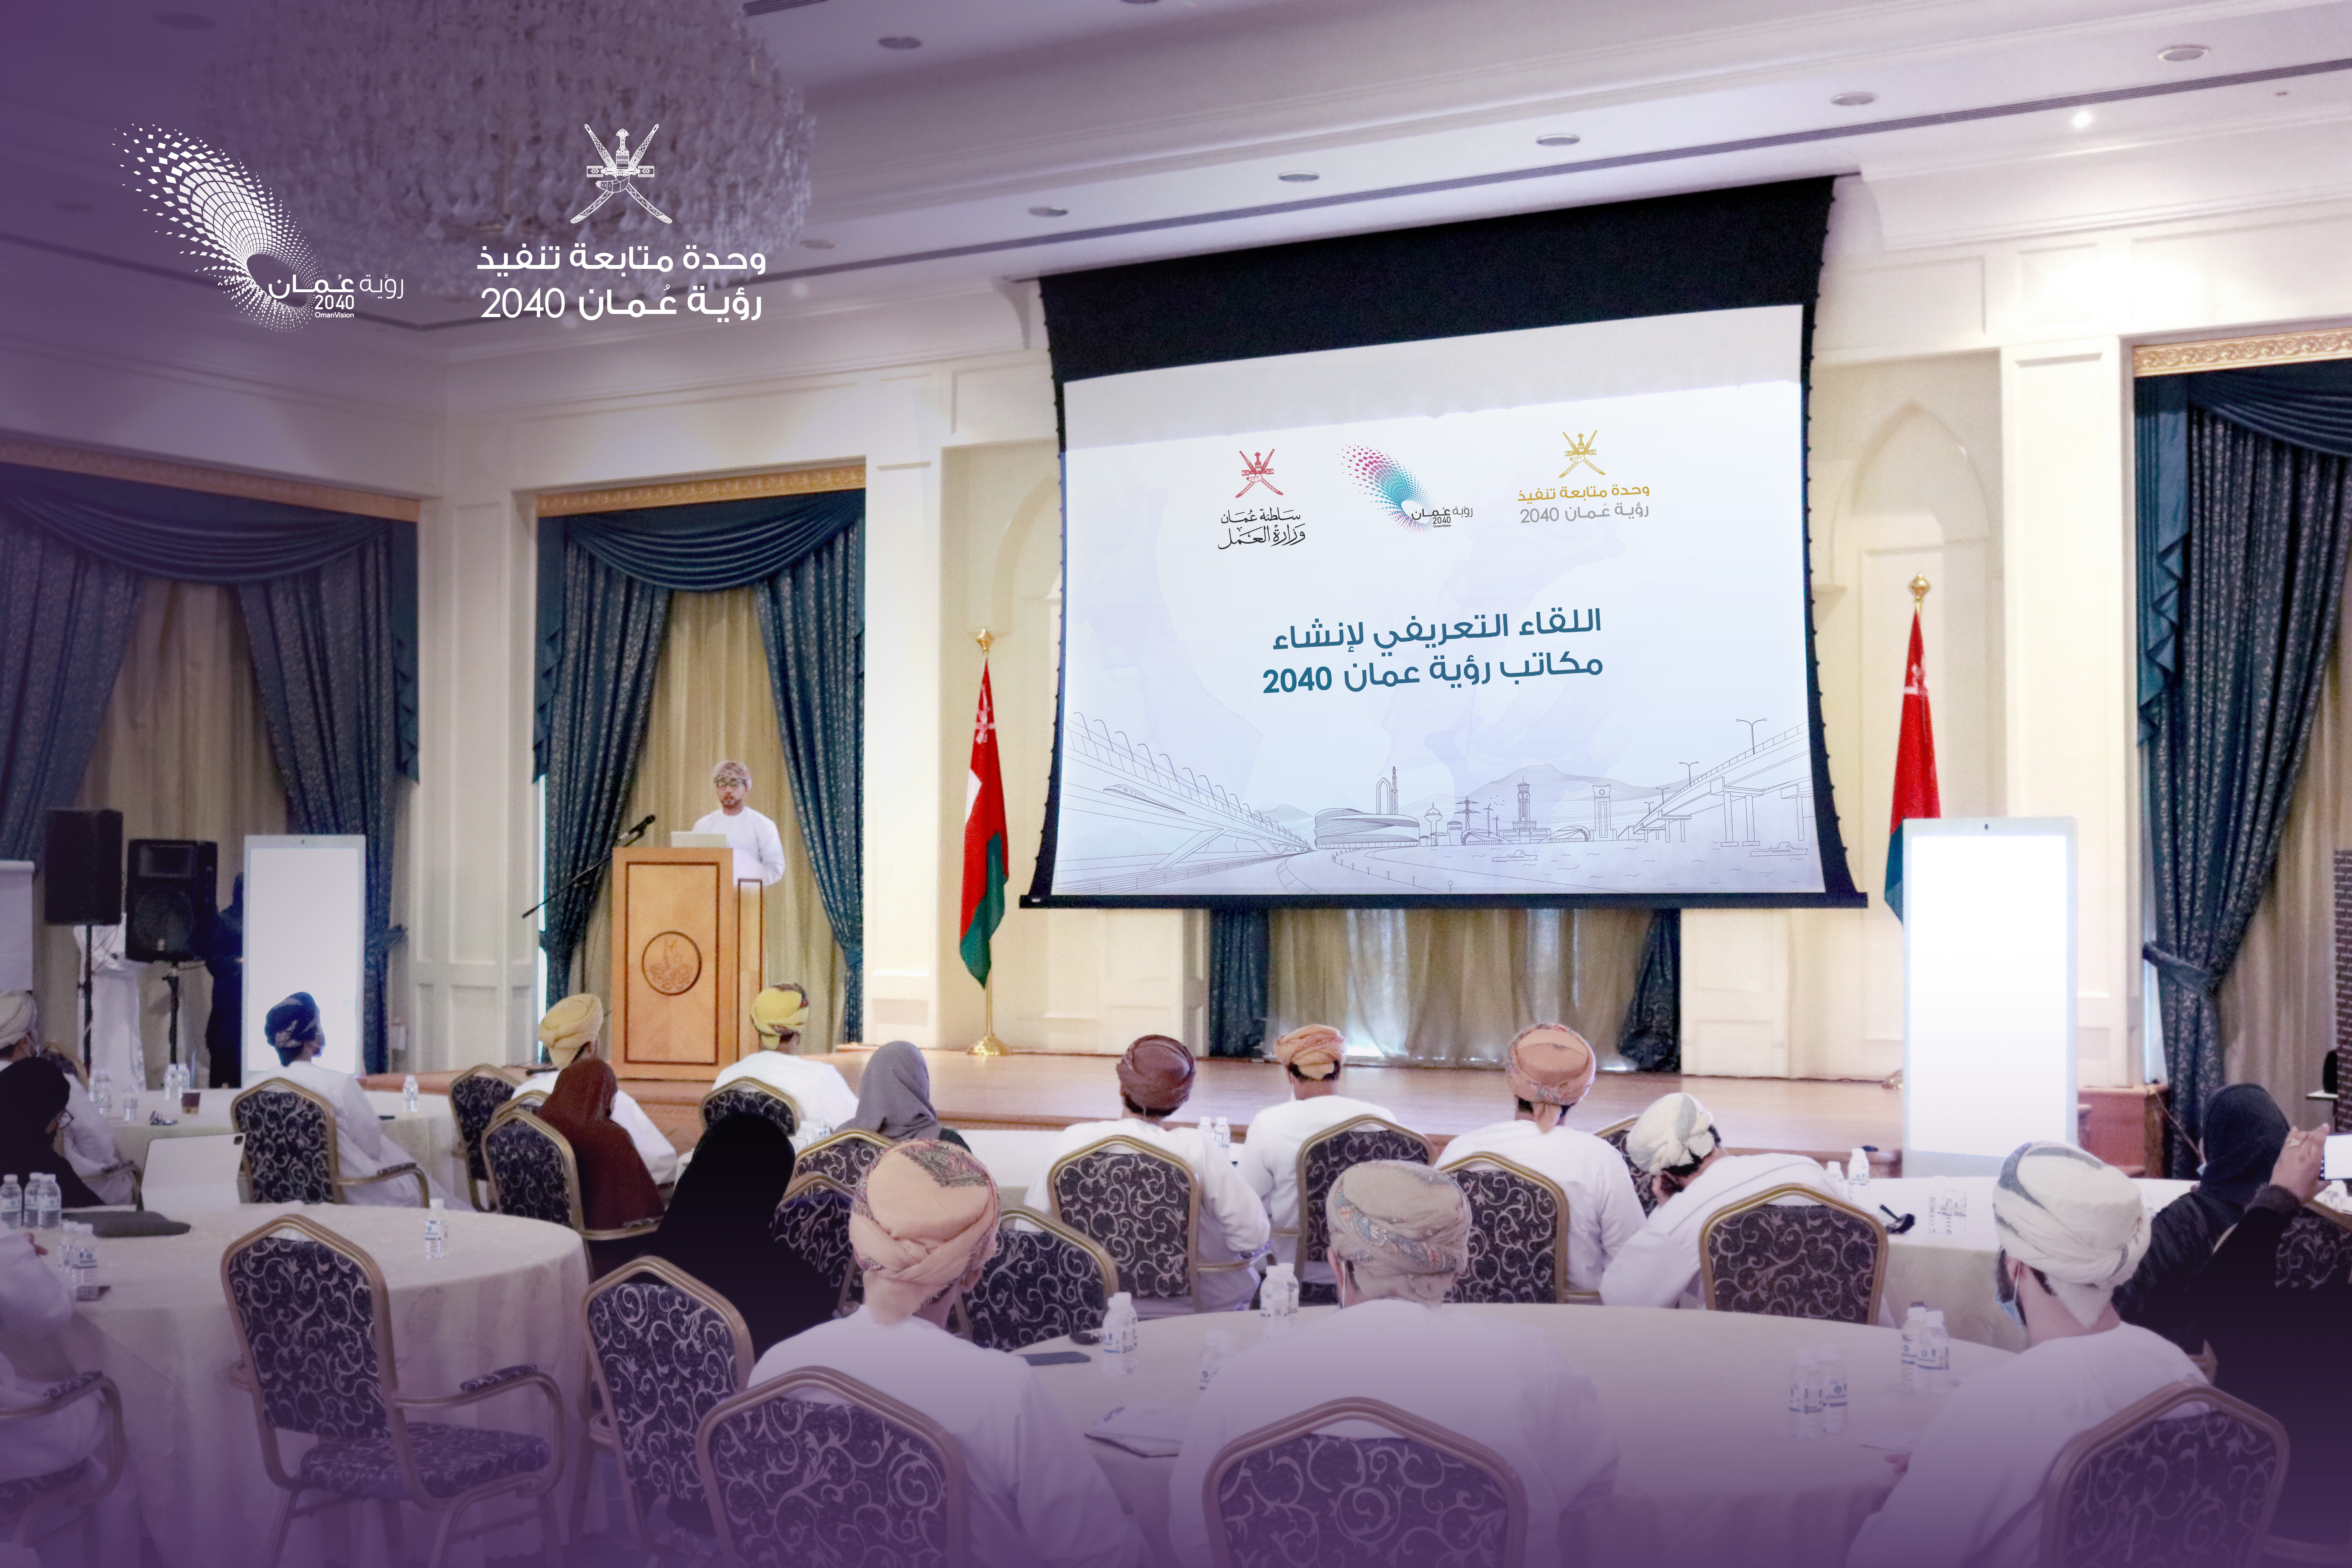 "مكاتب الرؤية" تعمل على متابعة الجهات الحكومية لتحقيق مستهدفات رؤية عمان 2040